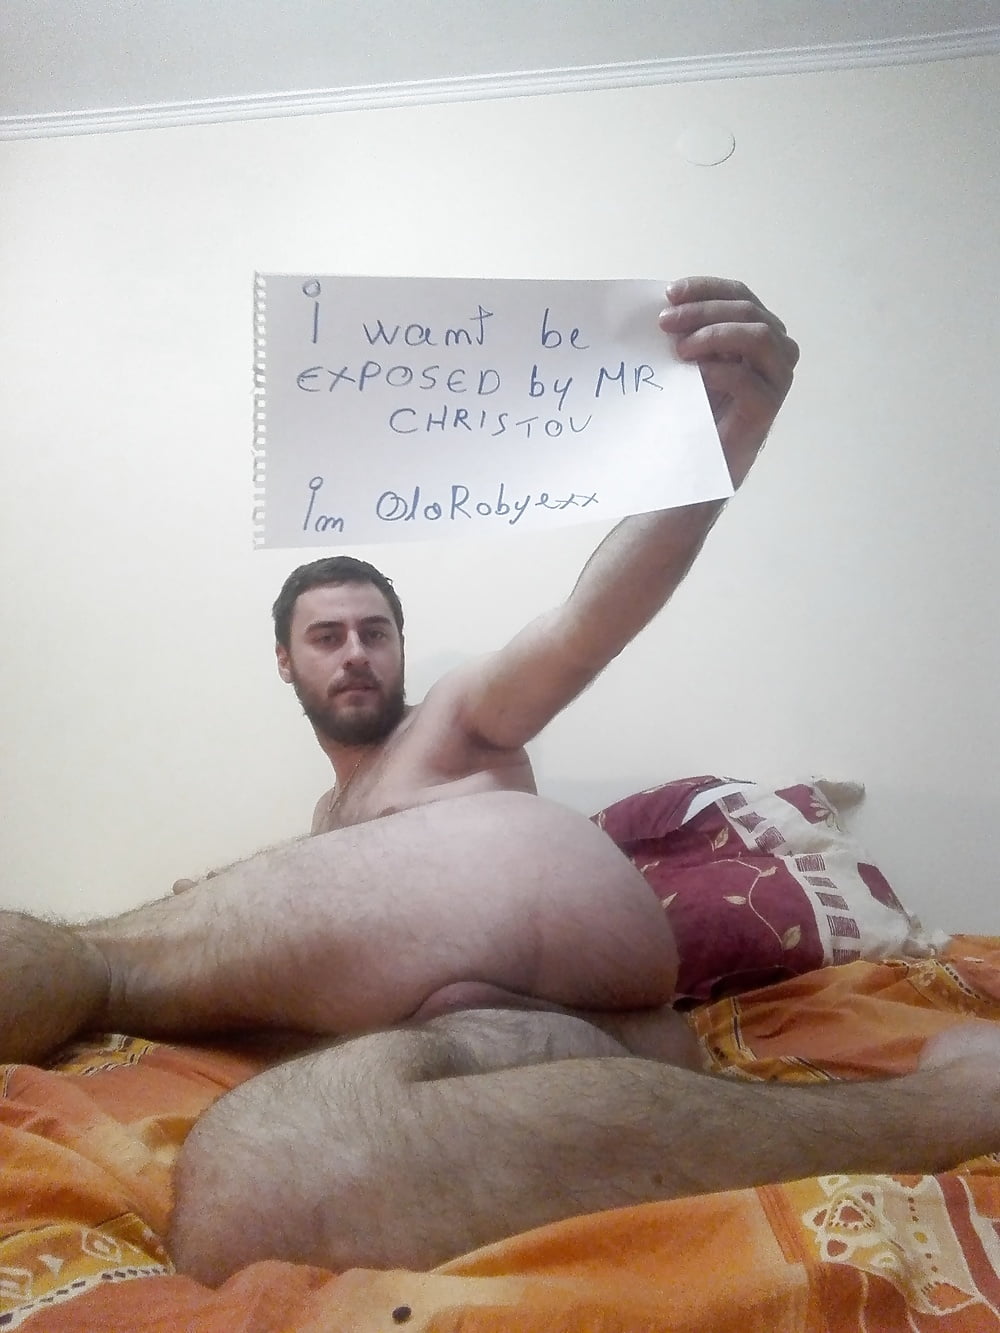 Olarobyexx_-_faggot_exposed_tribute_paper_for_MR_Chrtistov (4/15)